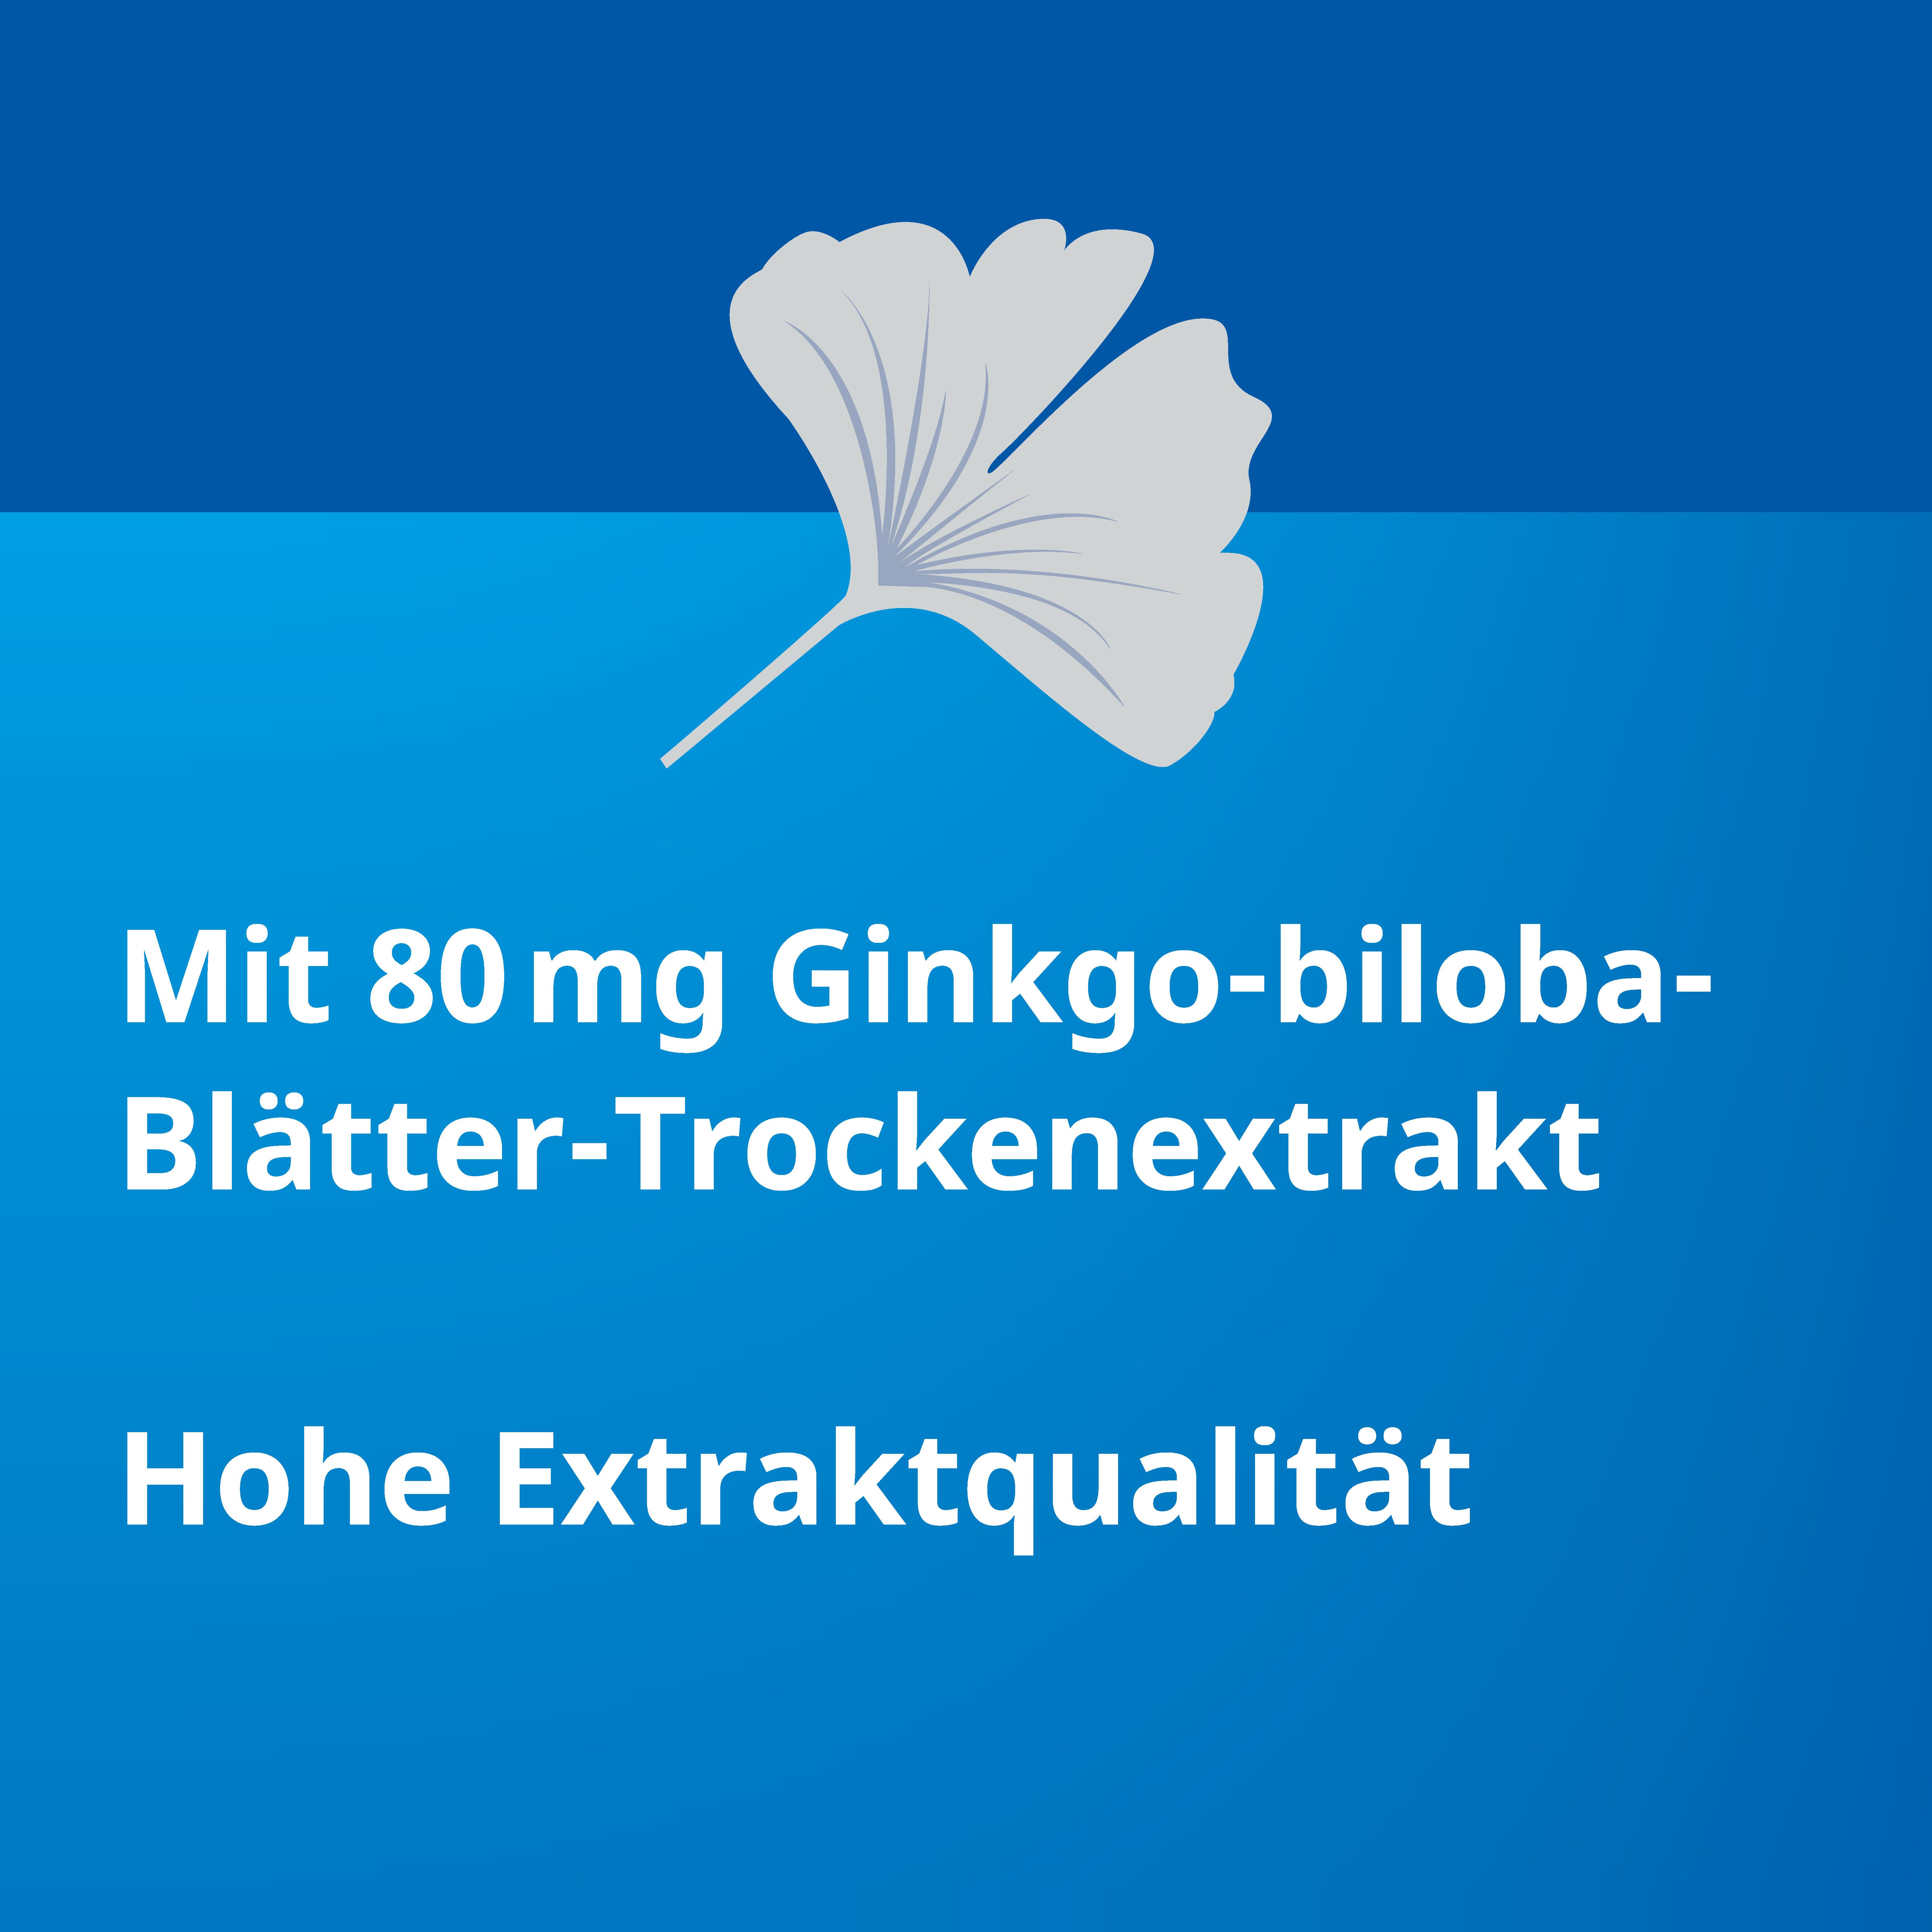 Ginkgo Biloba STADA® 80 mg bei Gedächtnis- und Konzentrationsstörungen